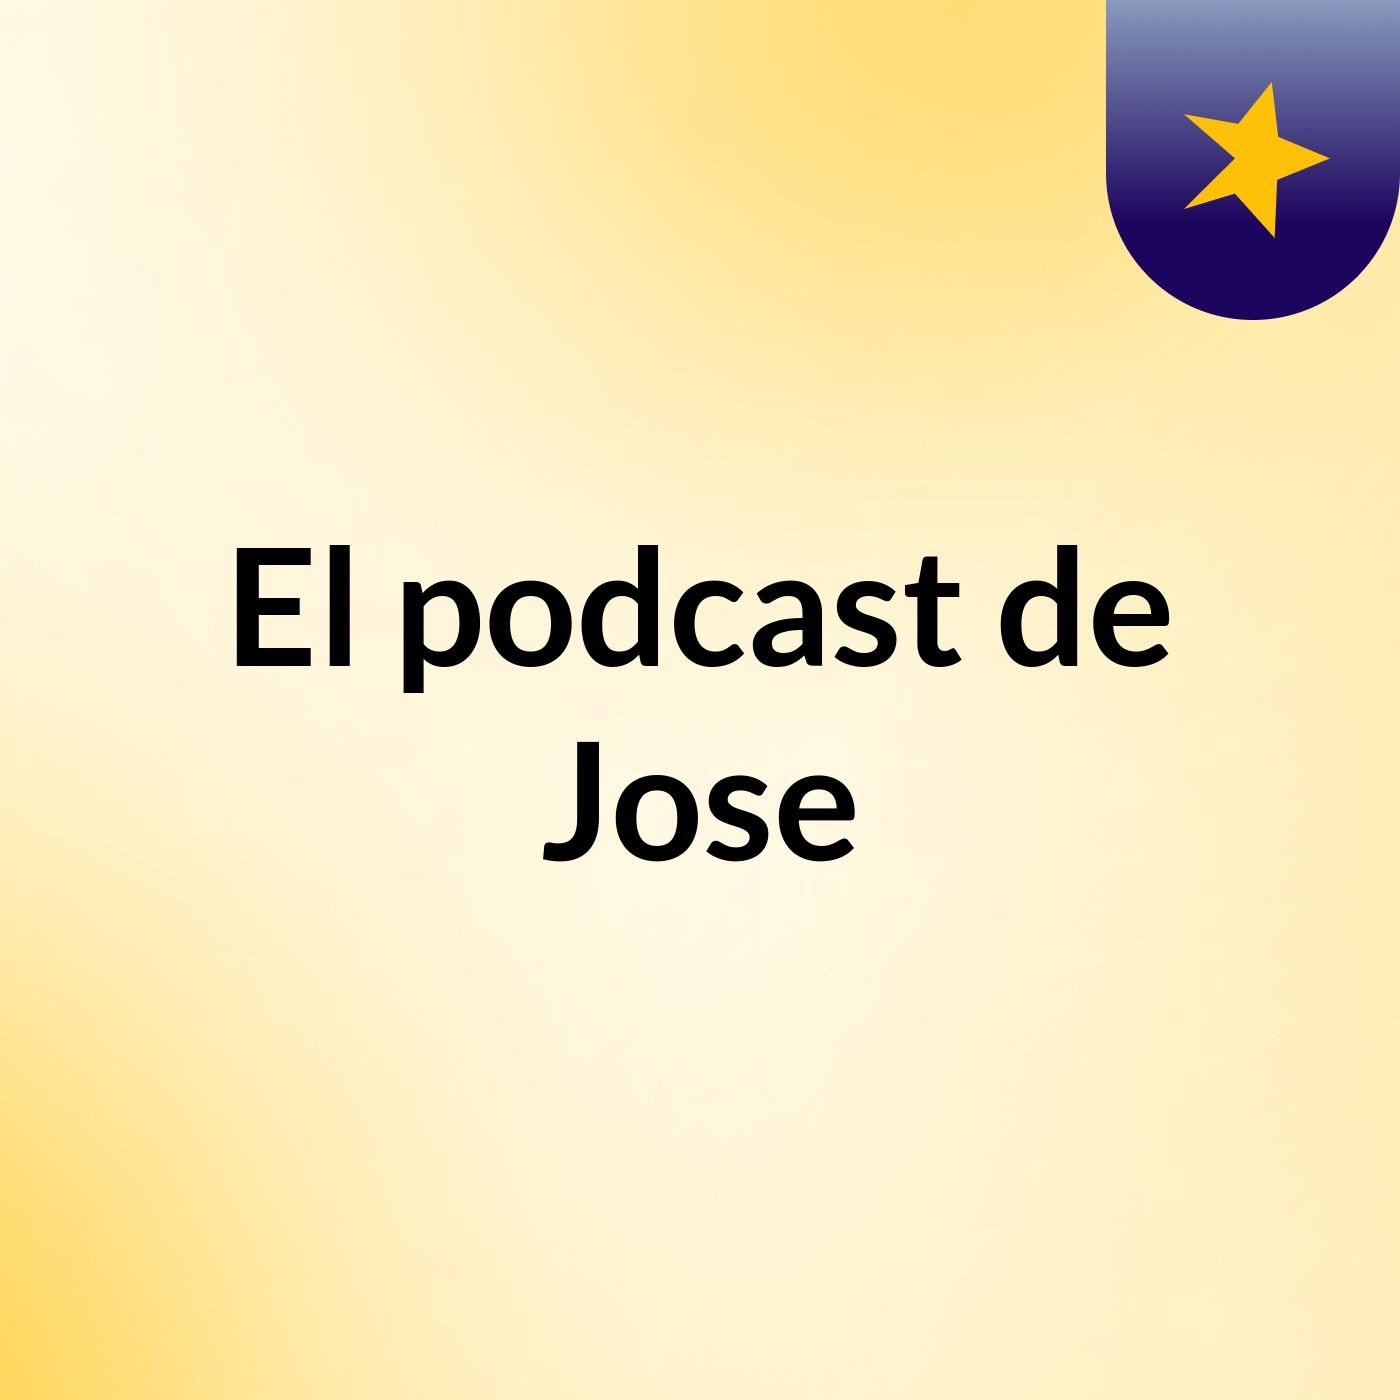 Episodio 3 - El podcast de Jose